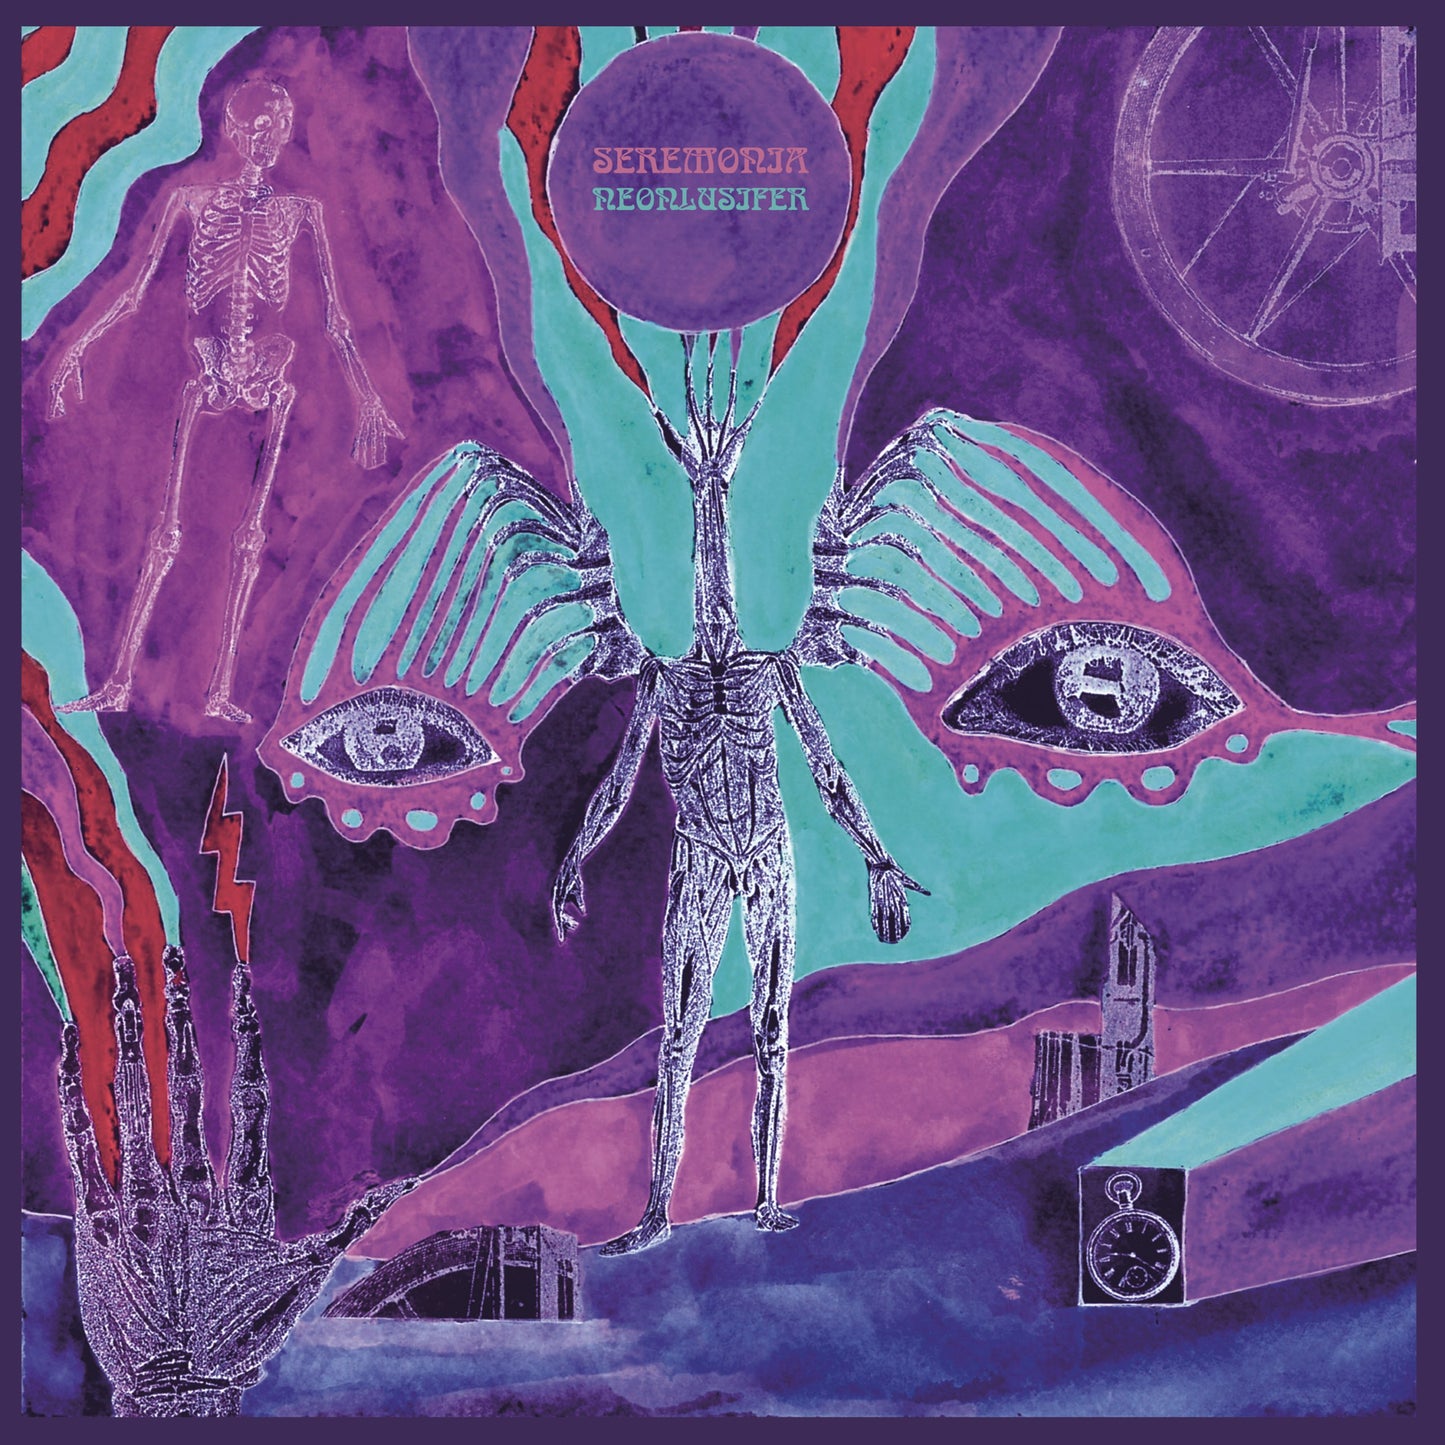 Seremonia - Neonlusifer - Transparent Violet Vinyl